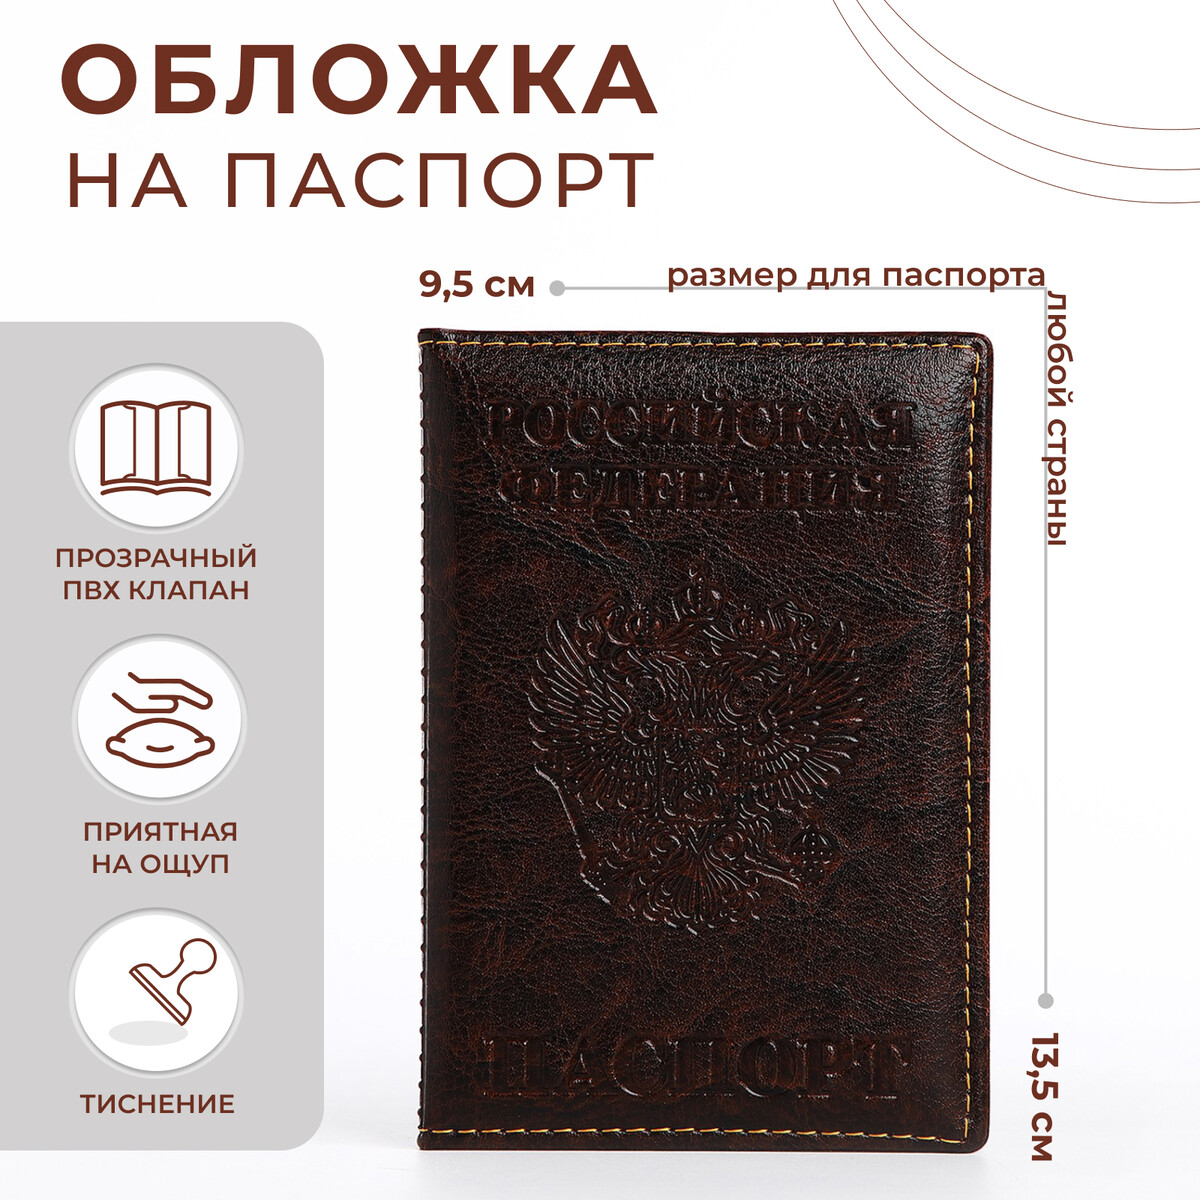 Обложка для паспорта, цвет коричневый обложка для паспорта